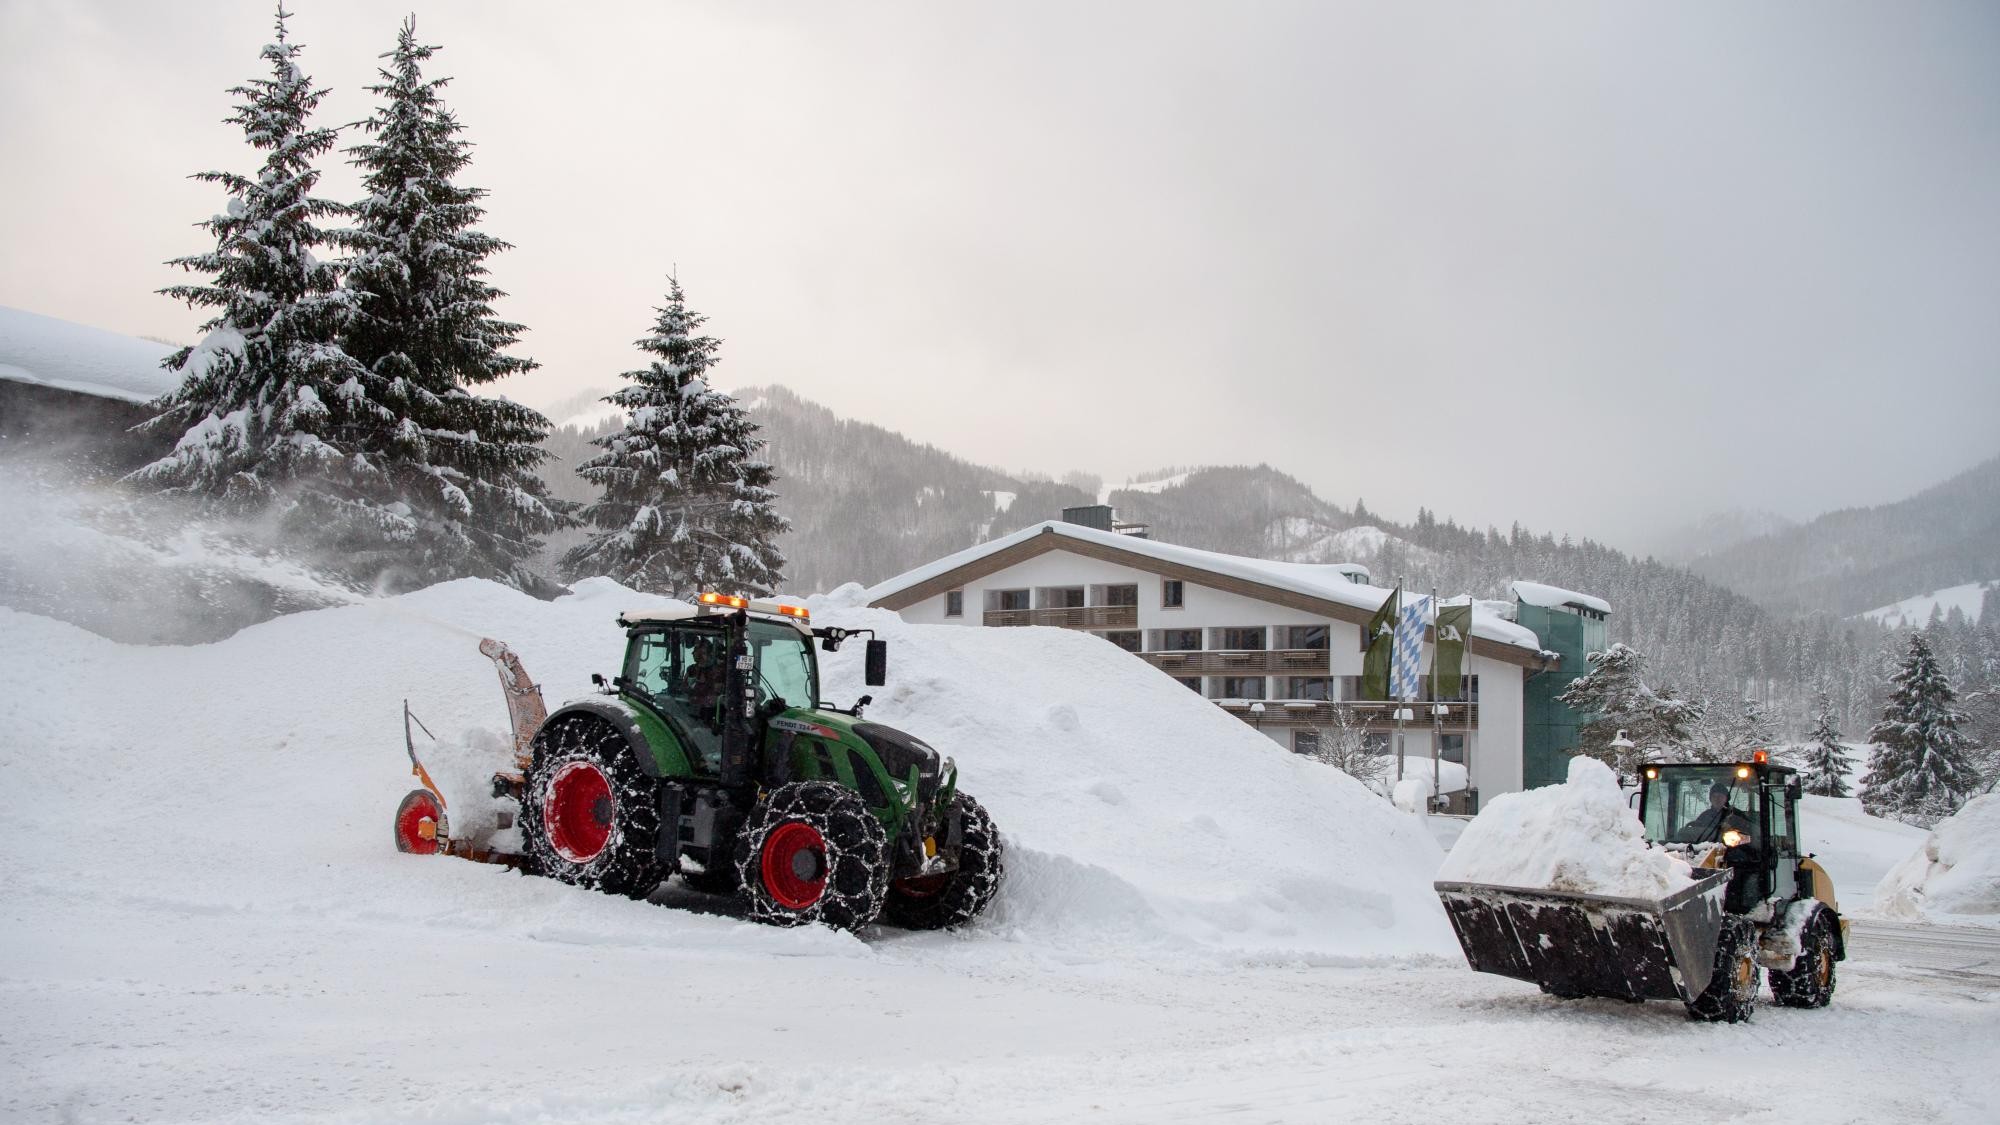 Bayern - In mehreren Landkreisen fällt wegen starken Schneefalls der Schulunterricht aus